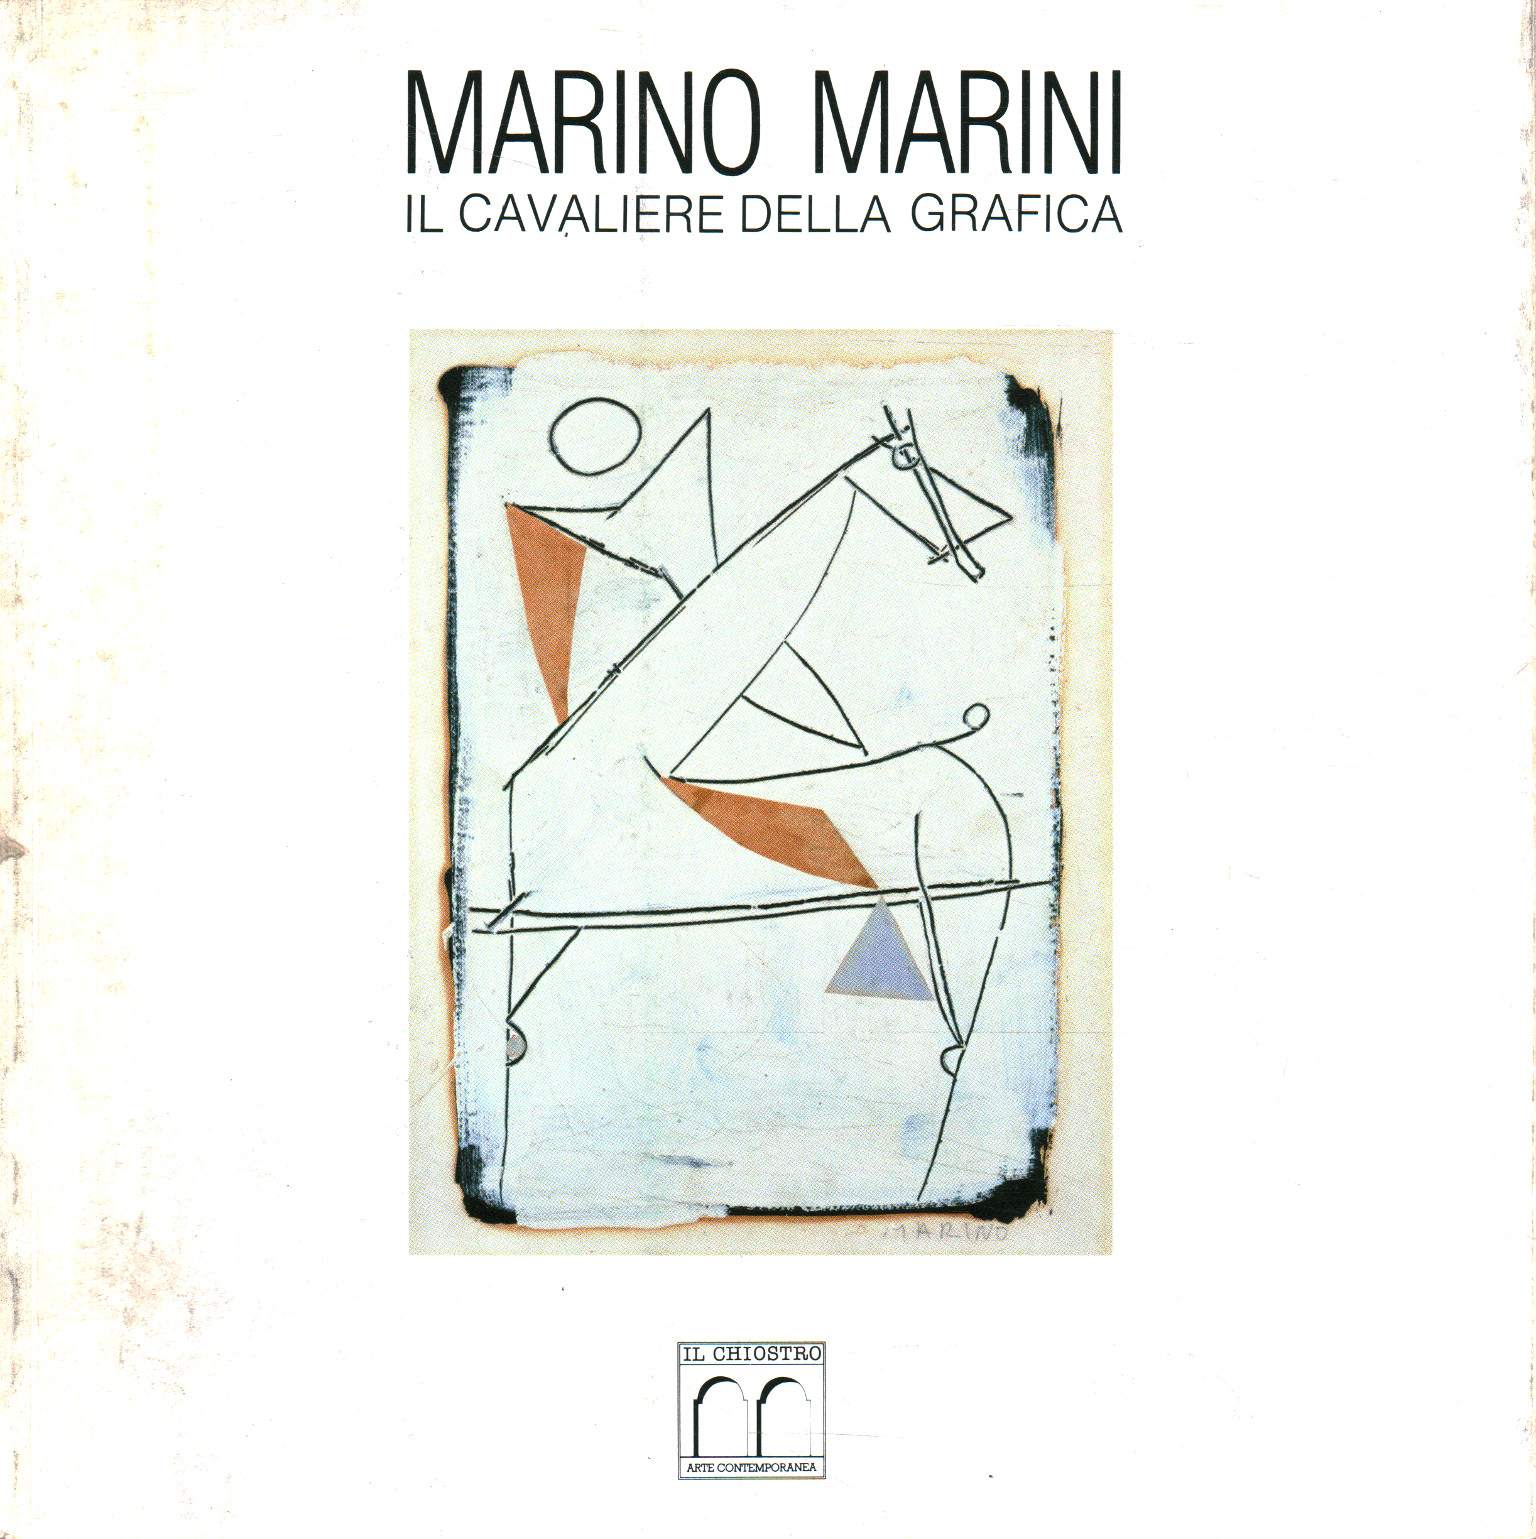 Marino Marini. El caballero del gráfico